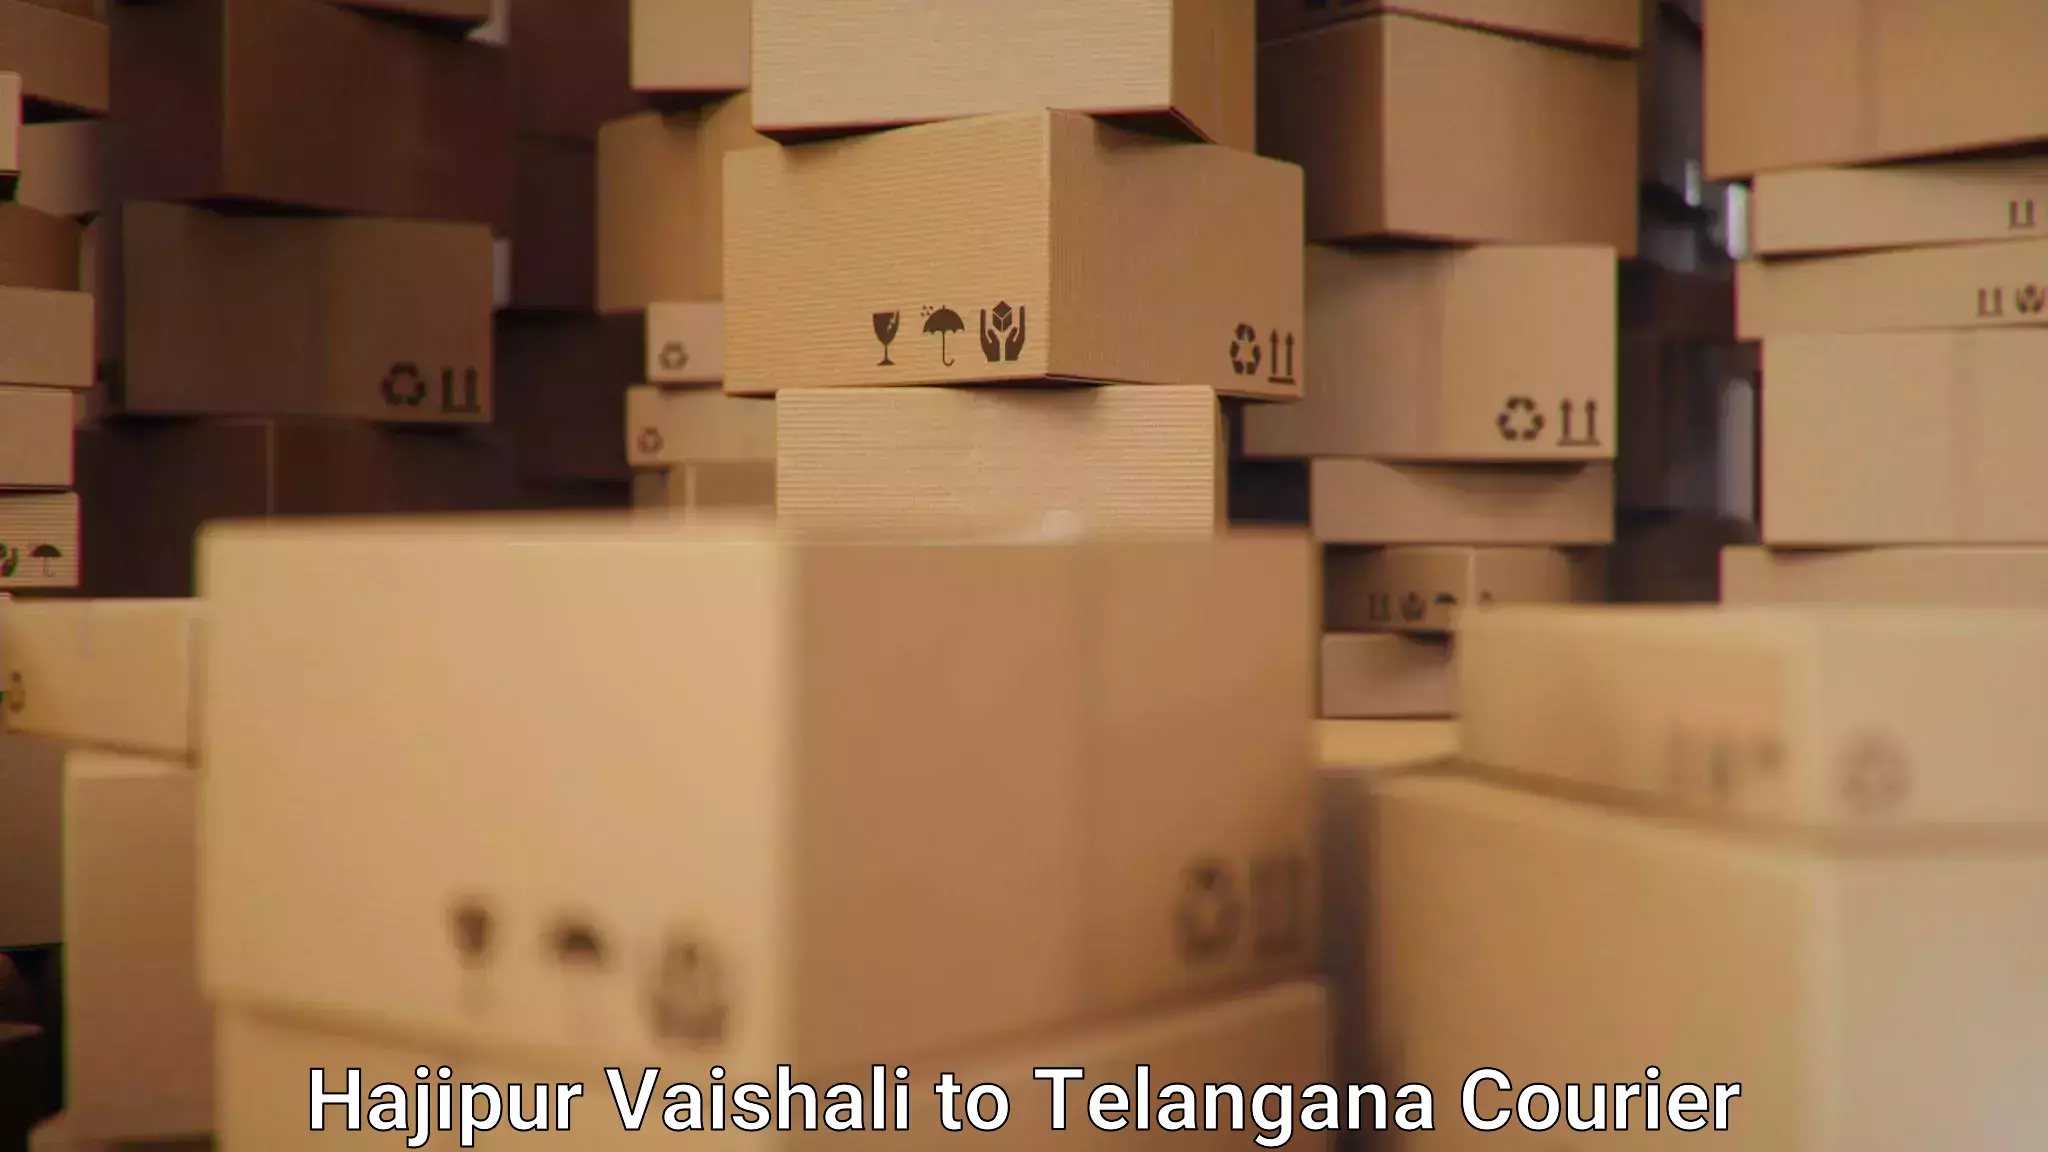 Express delivery solutions Hajipur Vaishali to Shadnagar